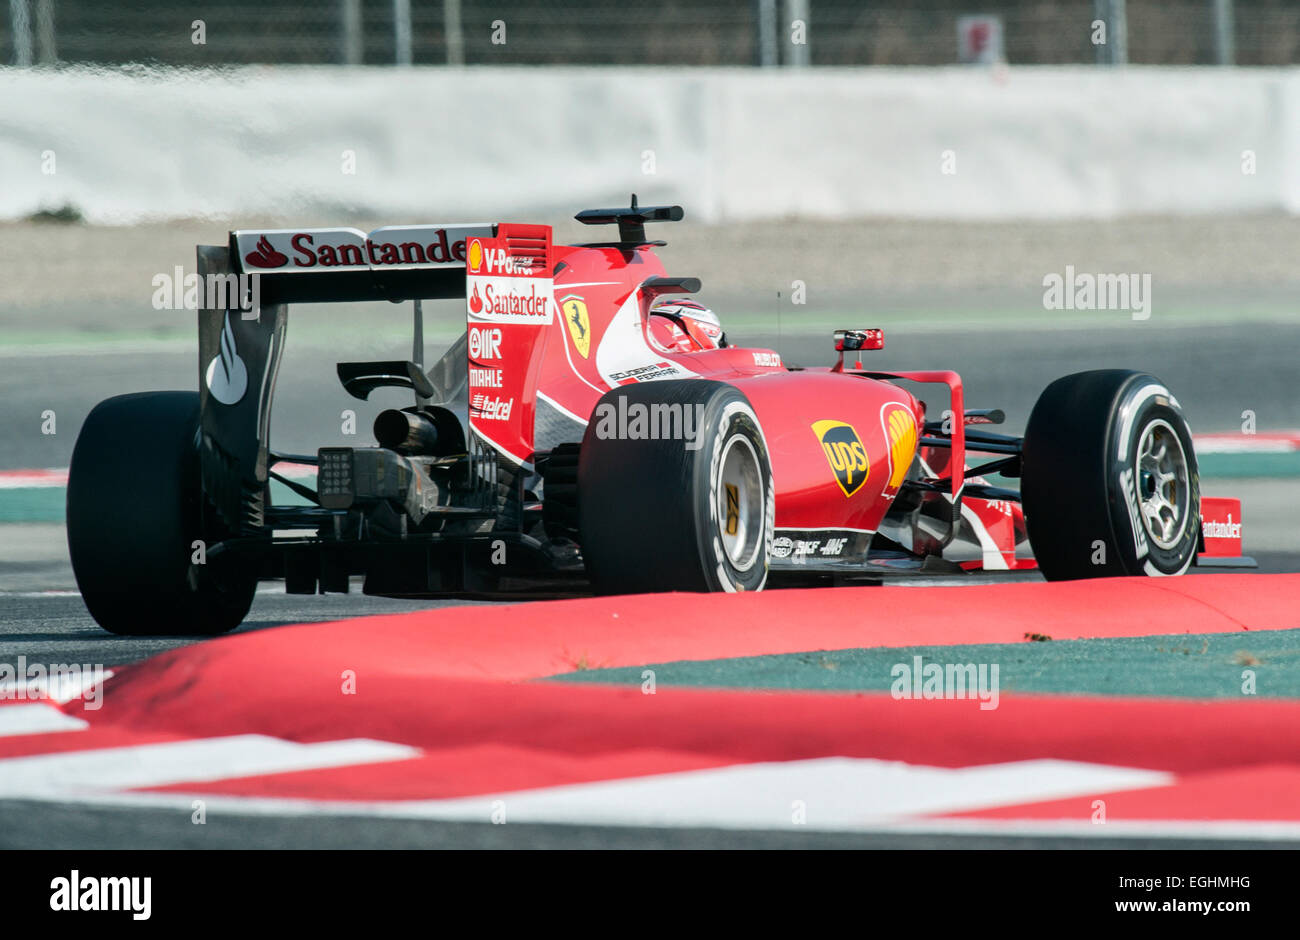 Kimi Raeikkoenen (FIN), la Scuderia Ferrari SF15-T, sesiones de pruebas de Fórmula 1, el circuito de Catalunya. Foto de stock